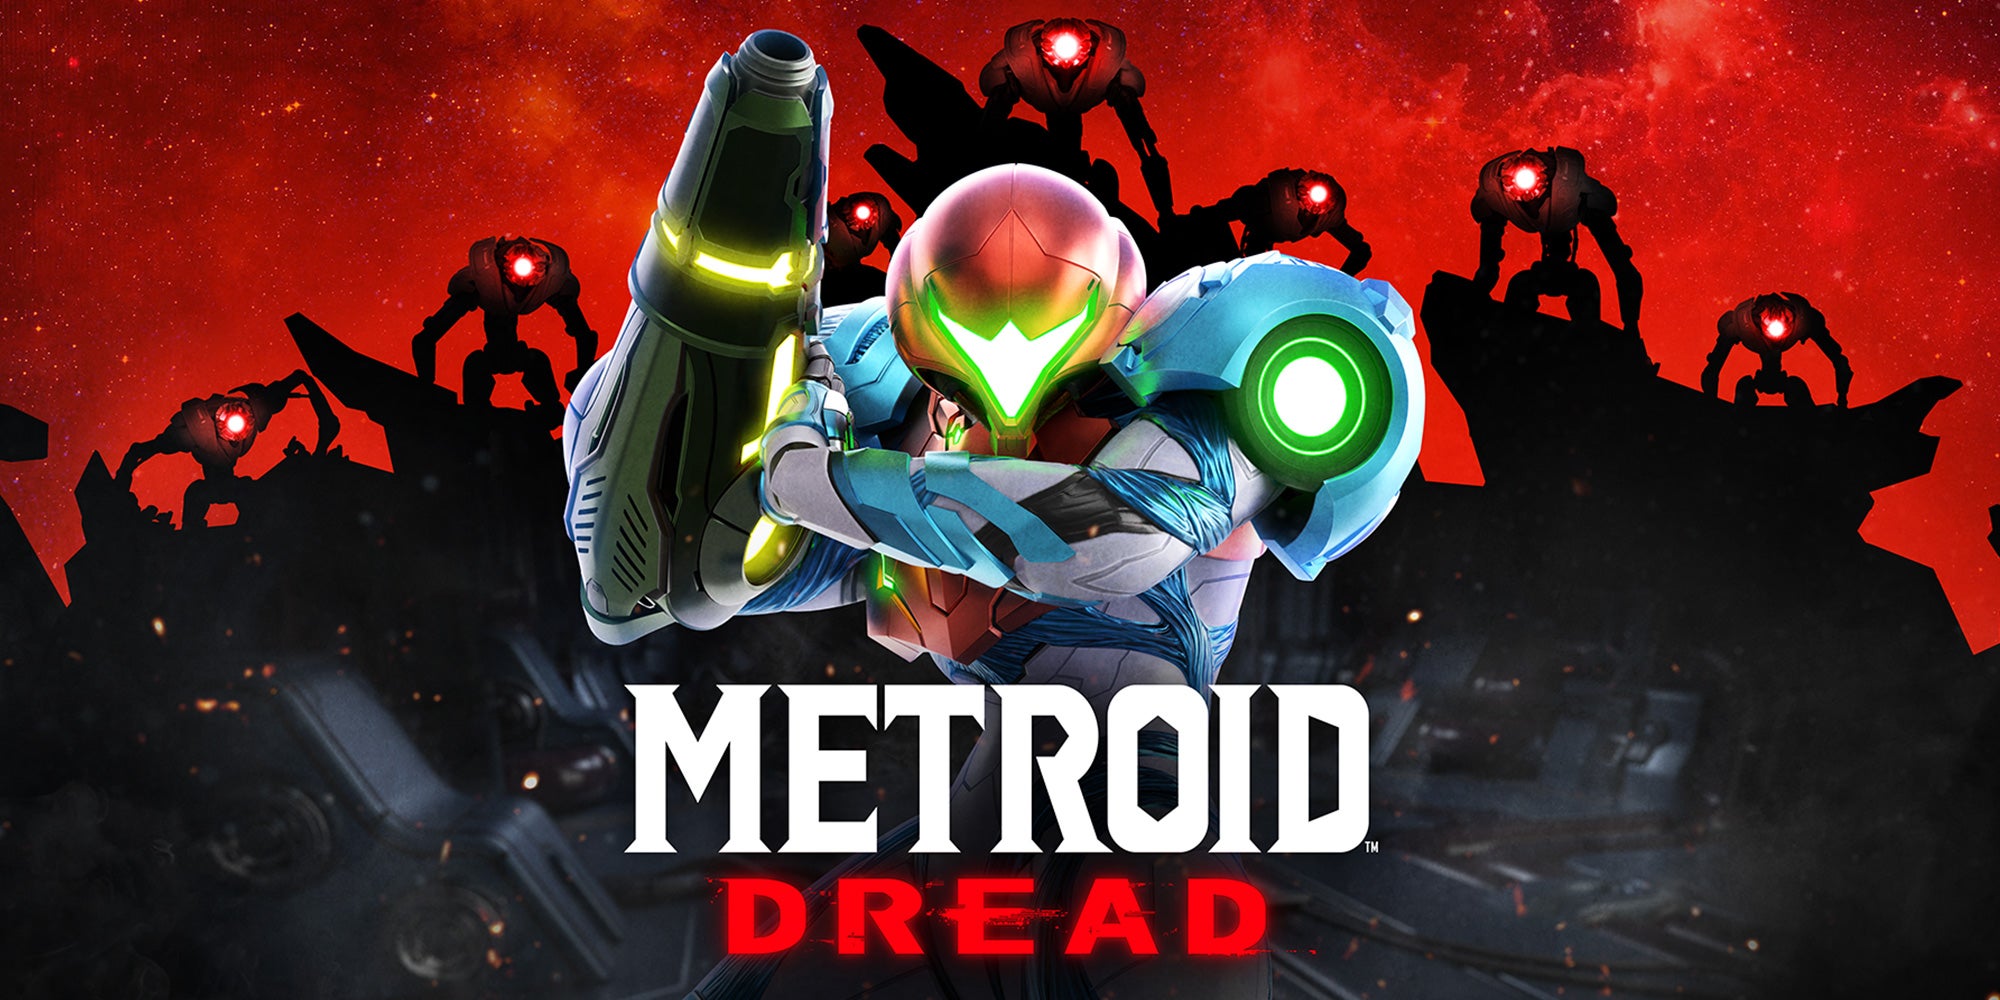 Imagem para Metroid Dread é o jogo mais vendido da franquia